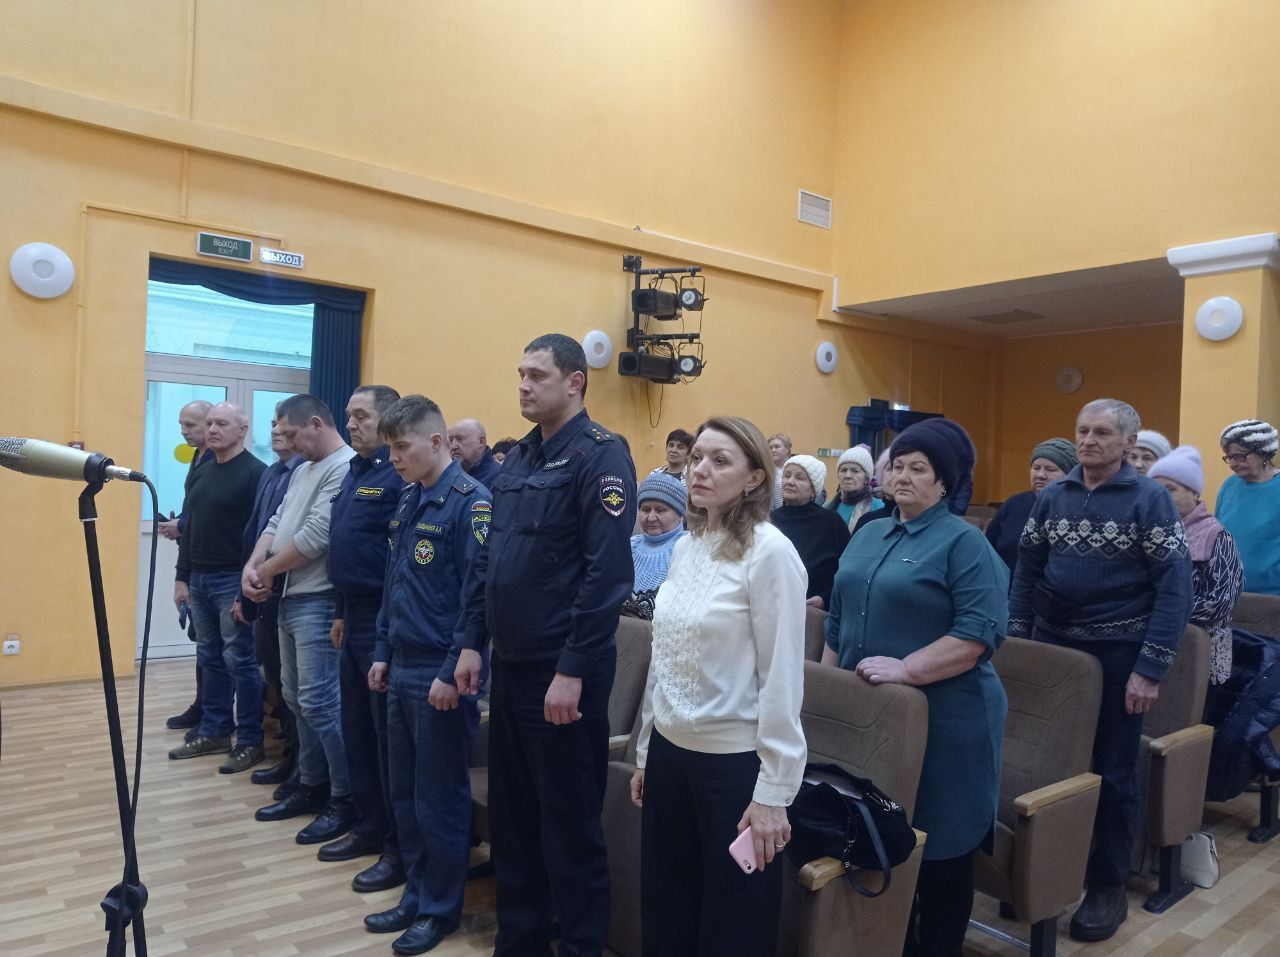 Светлана Миронова встретилась с черемуховцами 21 декабря. Не обошлось и без конфликта